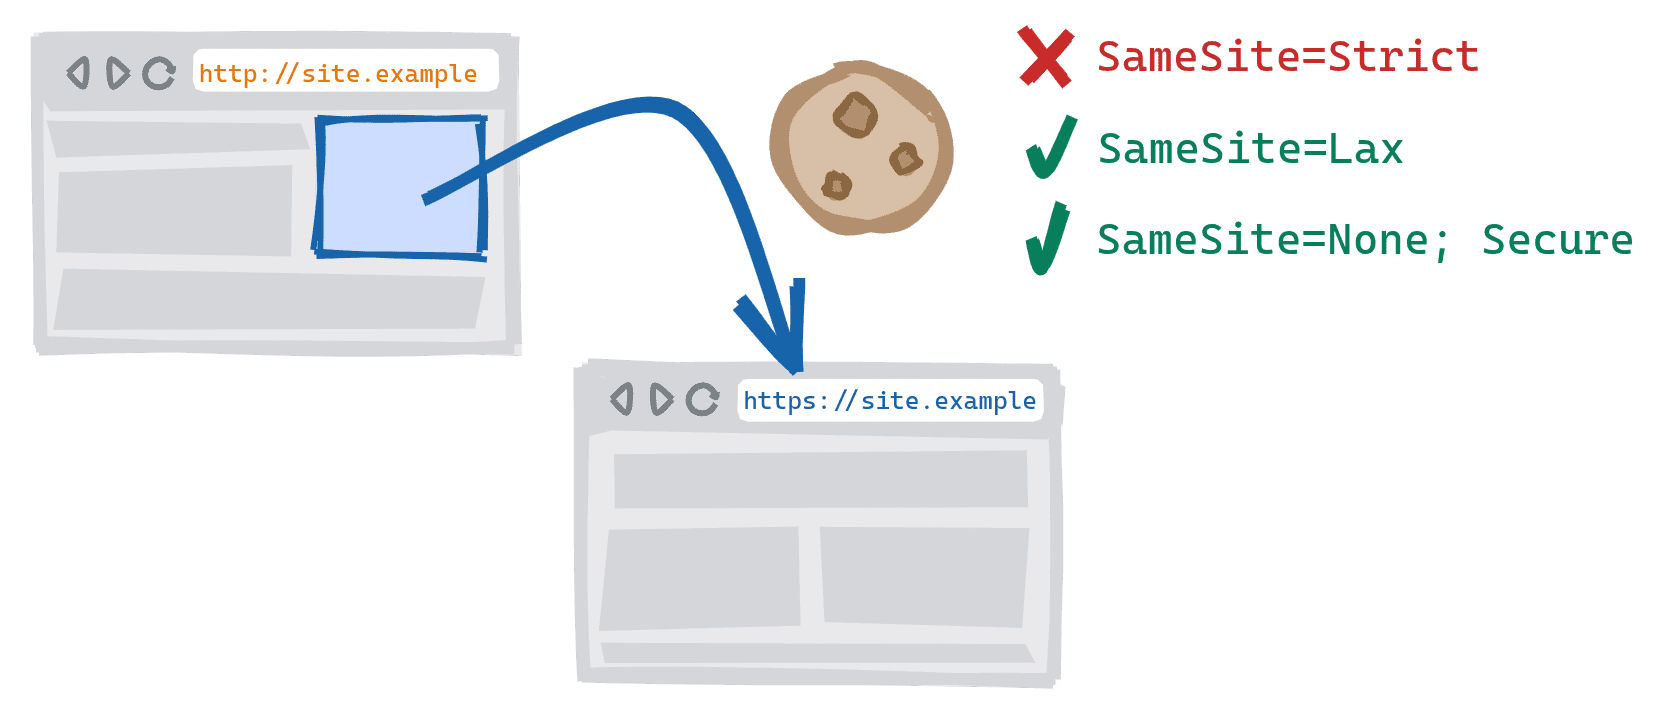 Schemaübergreifende Navigation, die ausgelöst wird, wenn ein Link in der unsicheren HTTP-Version einer Website zur sicheren HTTPS-Version folgt. SameSite=Strict-Cookies blockiert, SameSite=Lax und SameSite=None; Sichere Cookies sind zulässig.